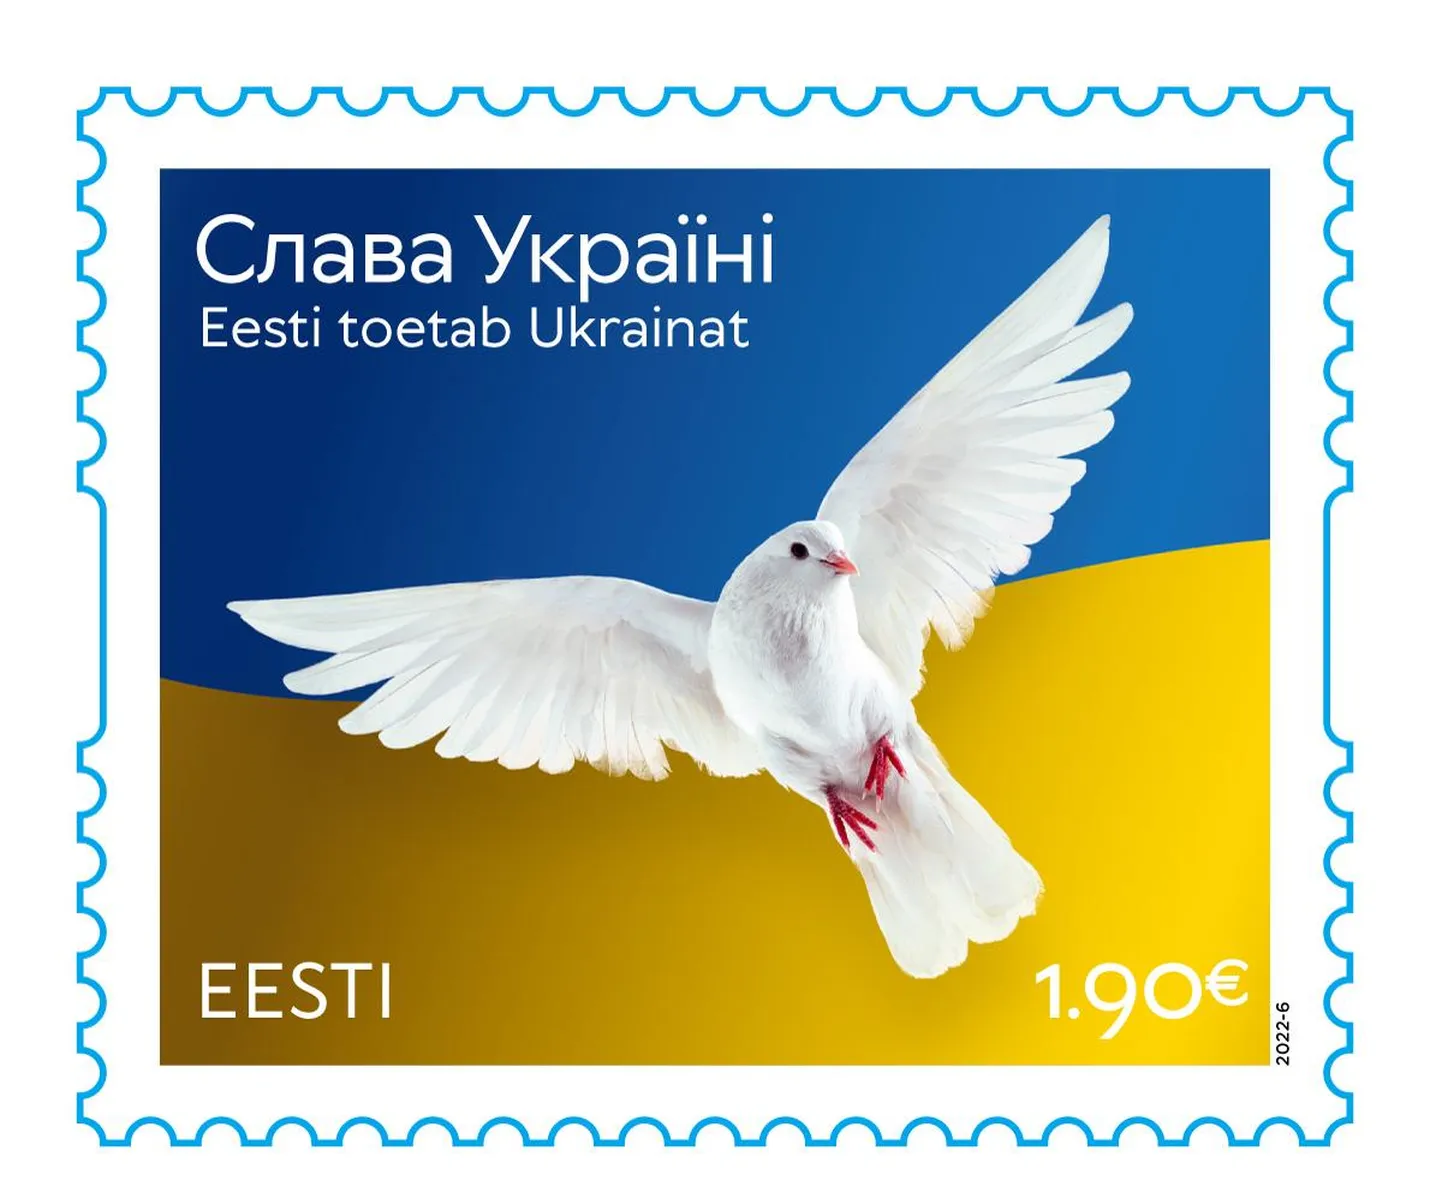 Postmark Ukraina toetuseks.